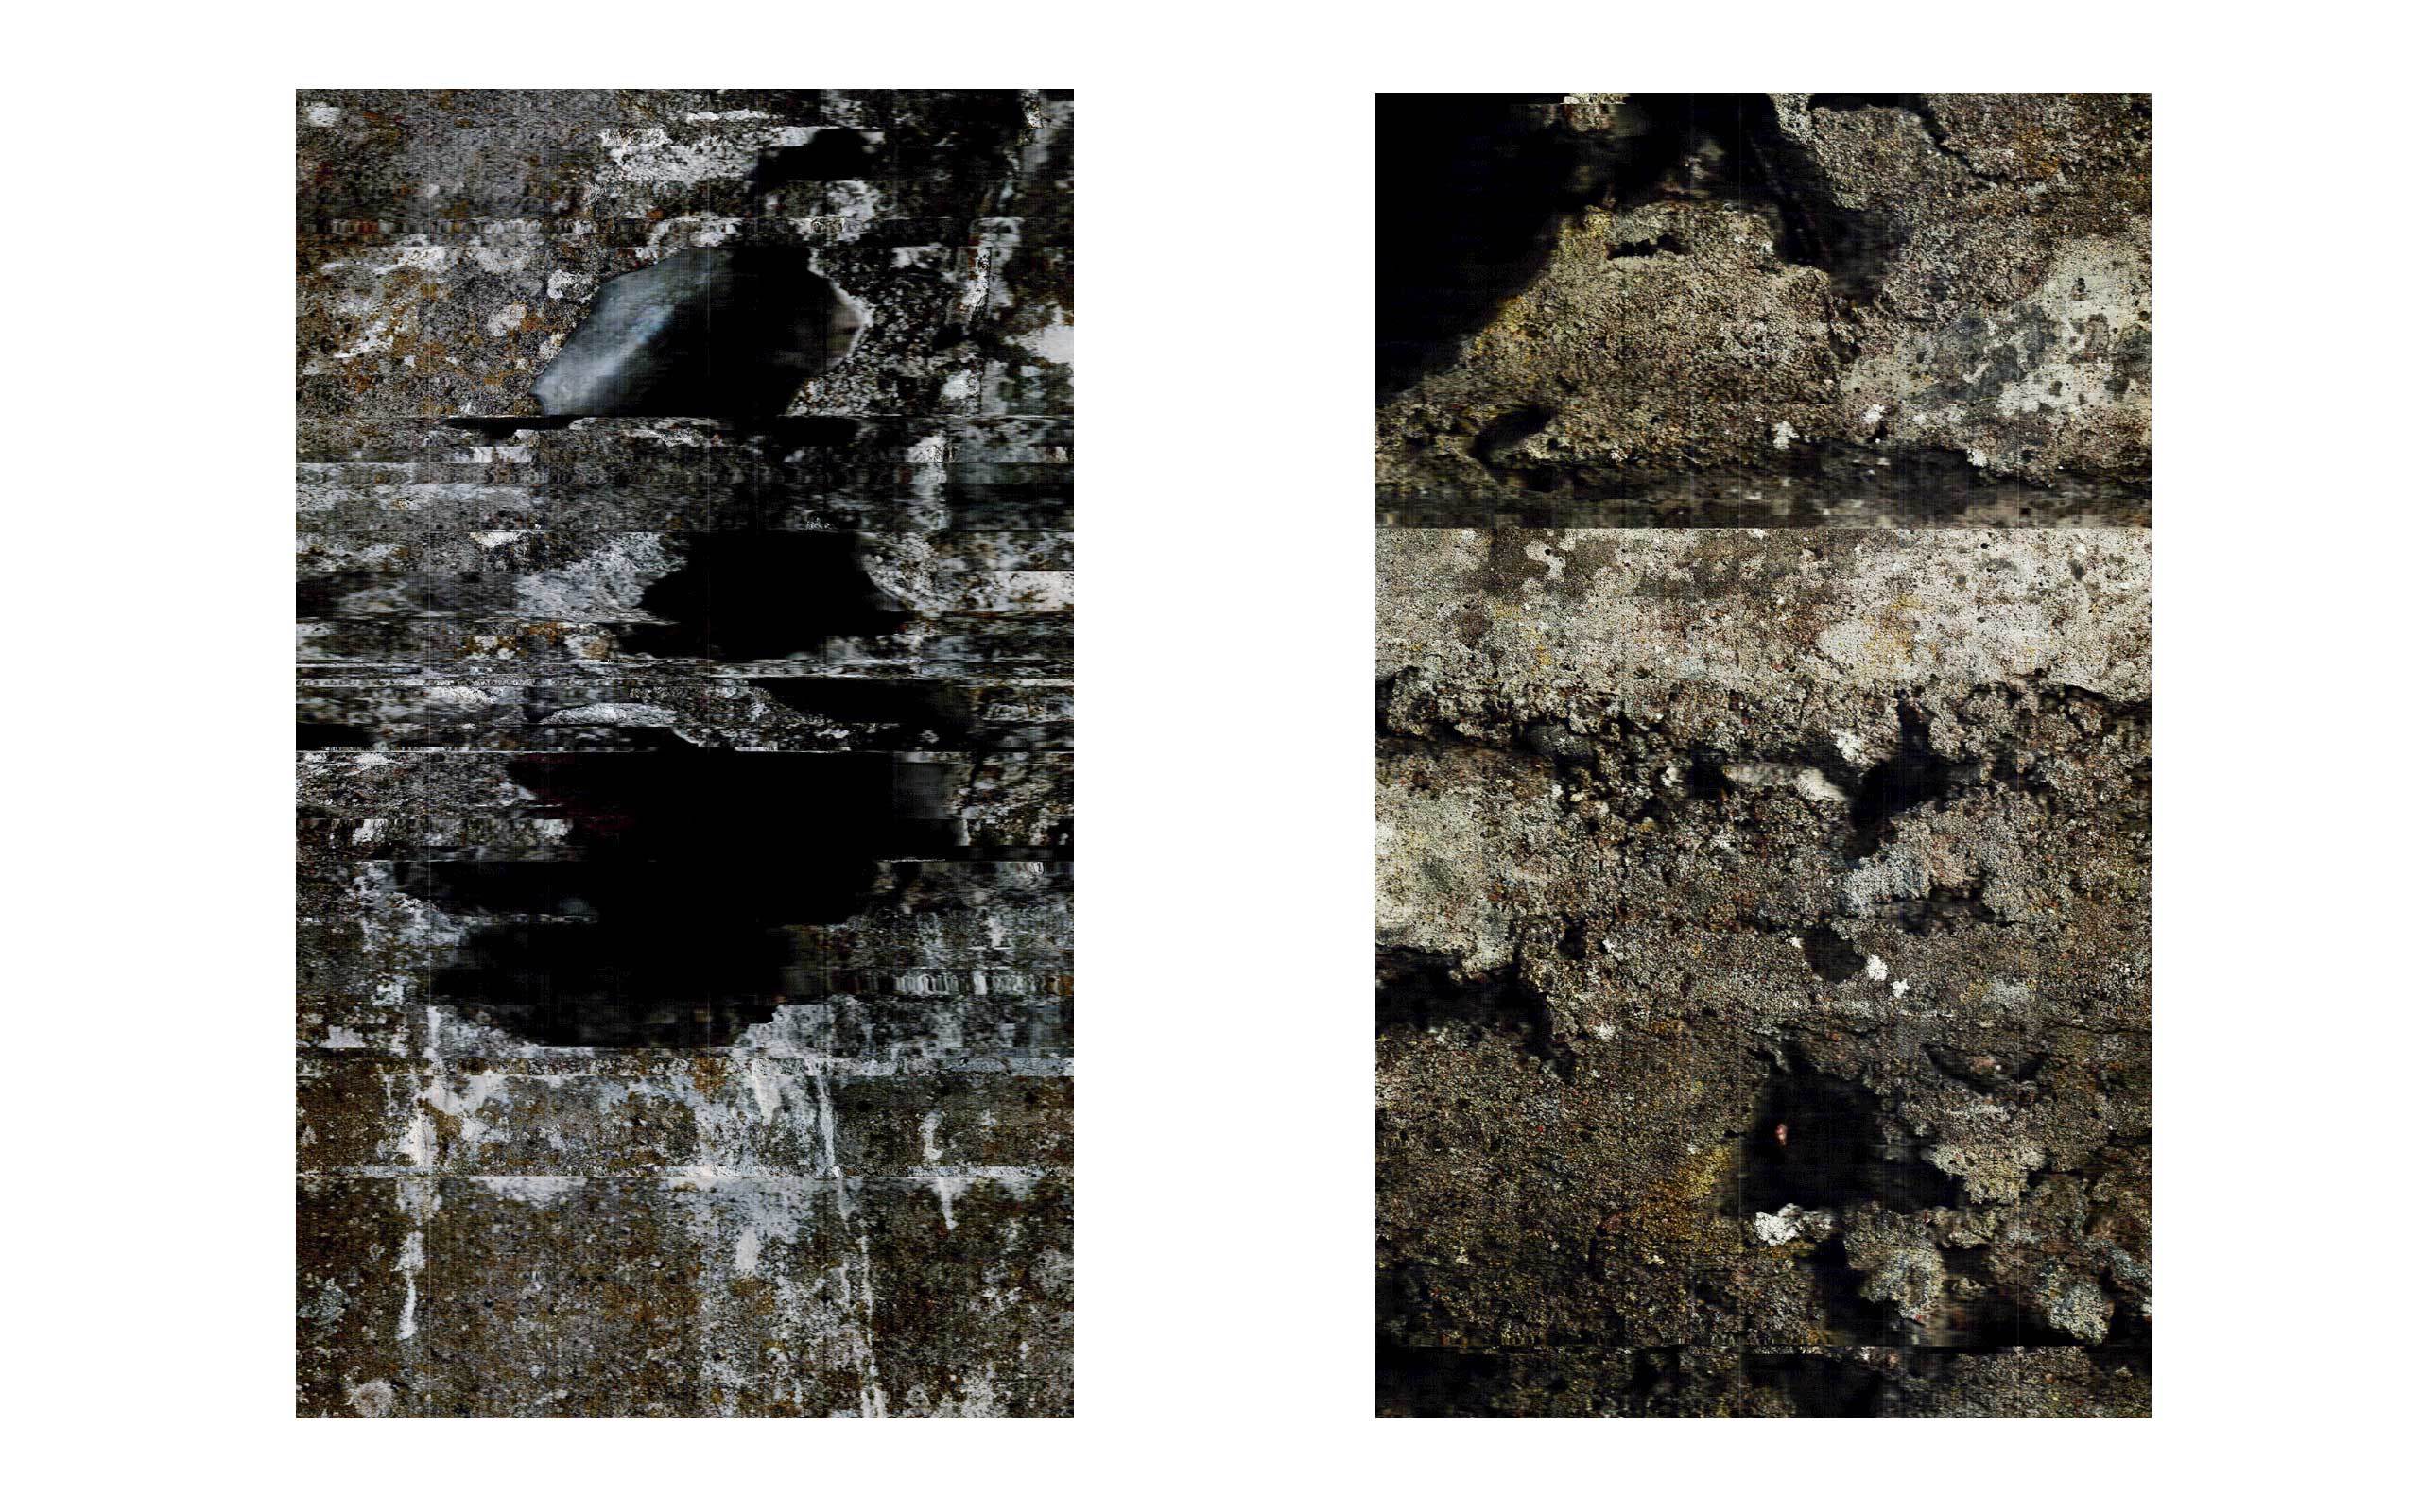 04 John Skoog limited-release art edition (Rift 10) South Wall; (Rift 11) East Wall